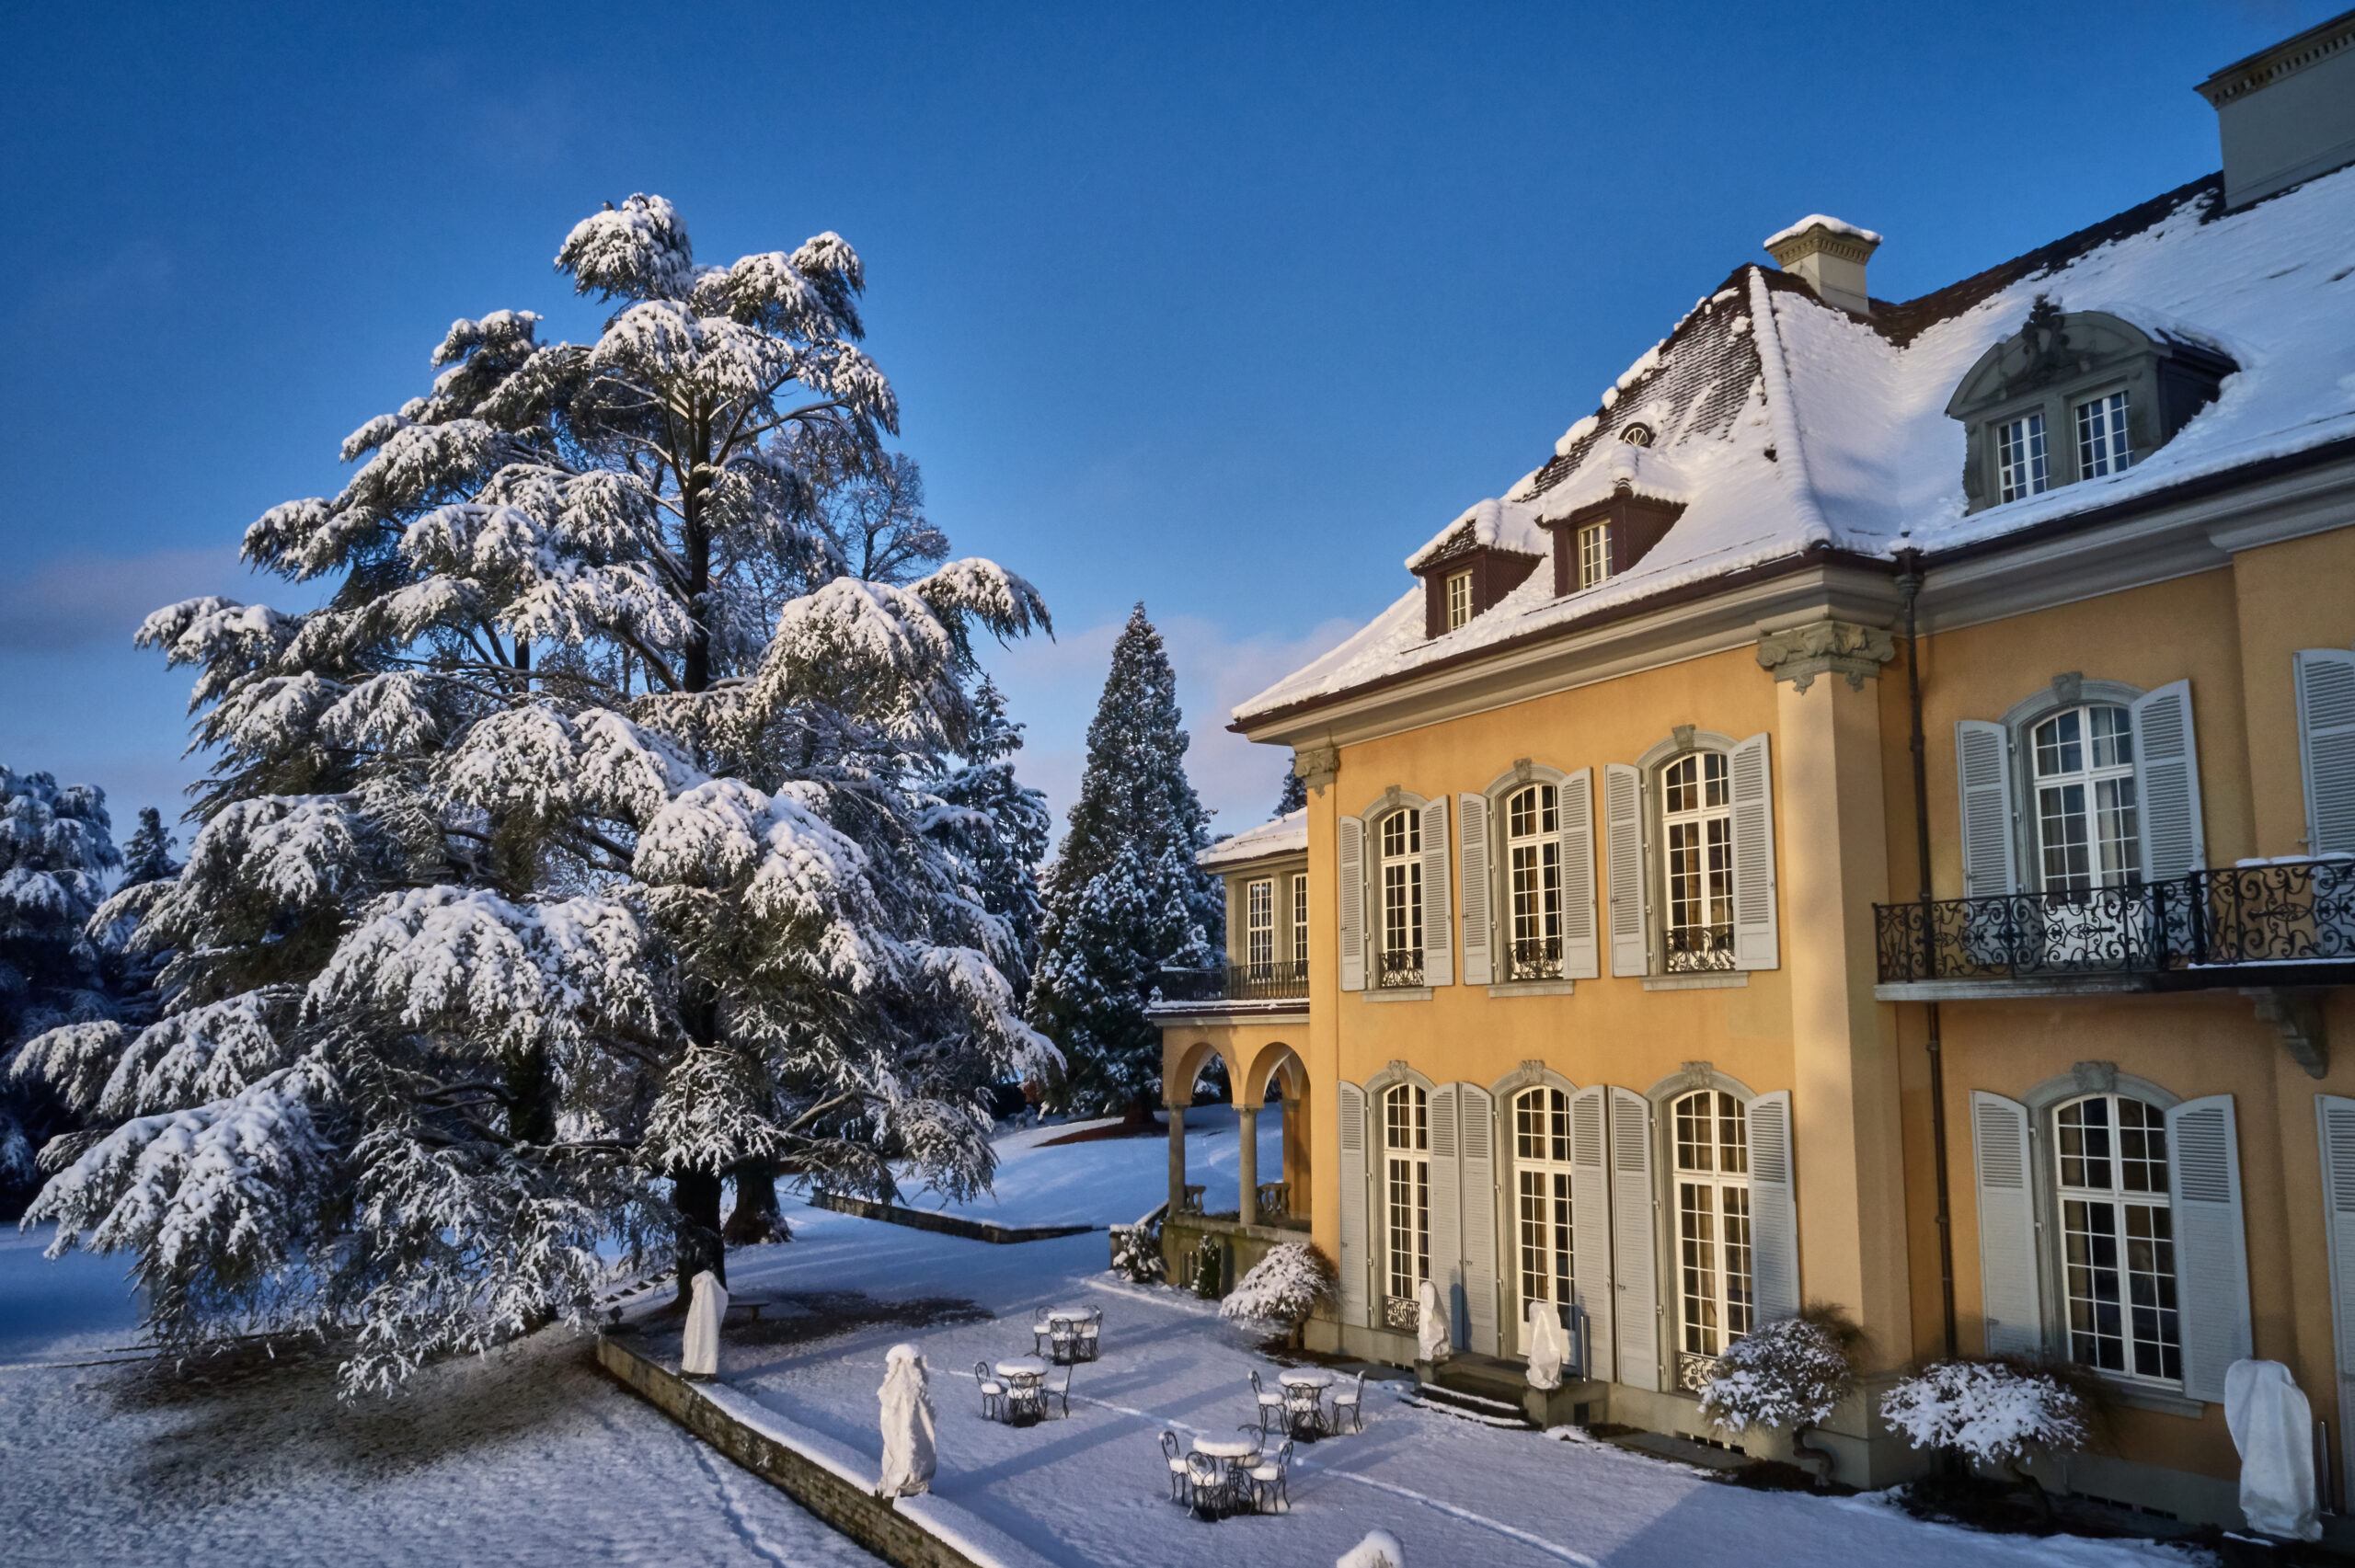 Location für Hochzeiten - St. Charles Hall Villa im Winter